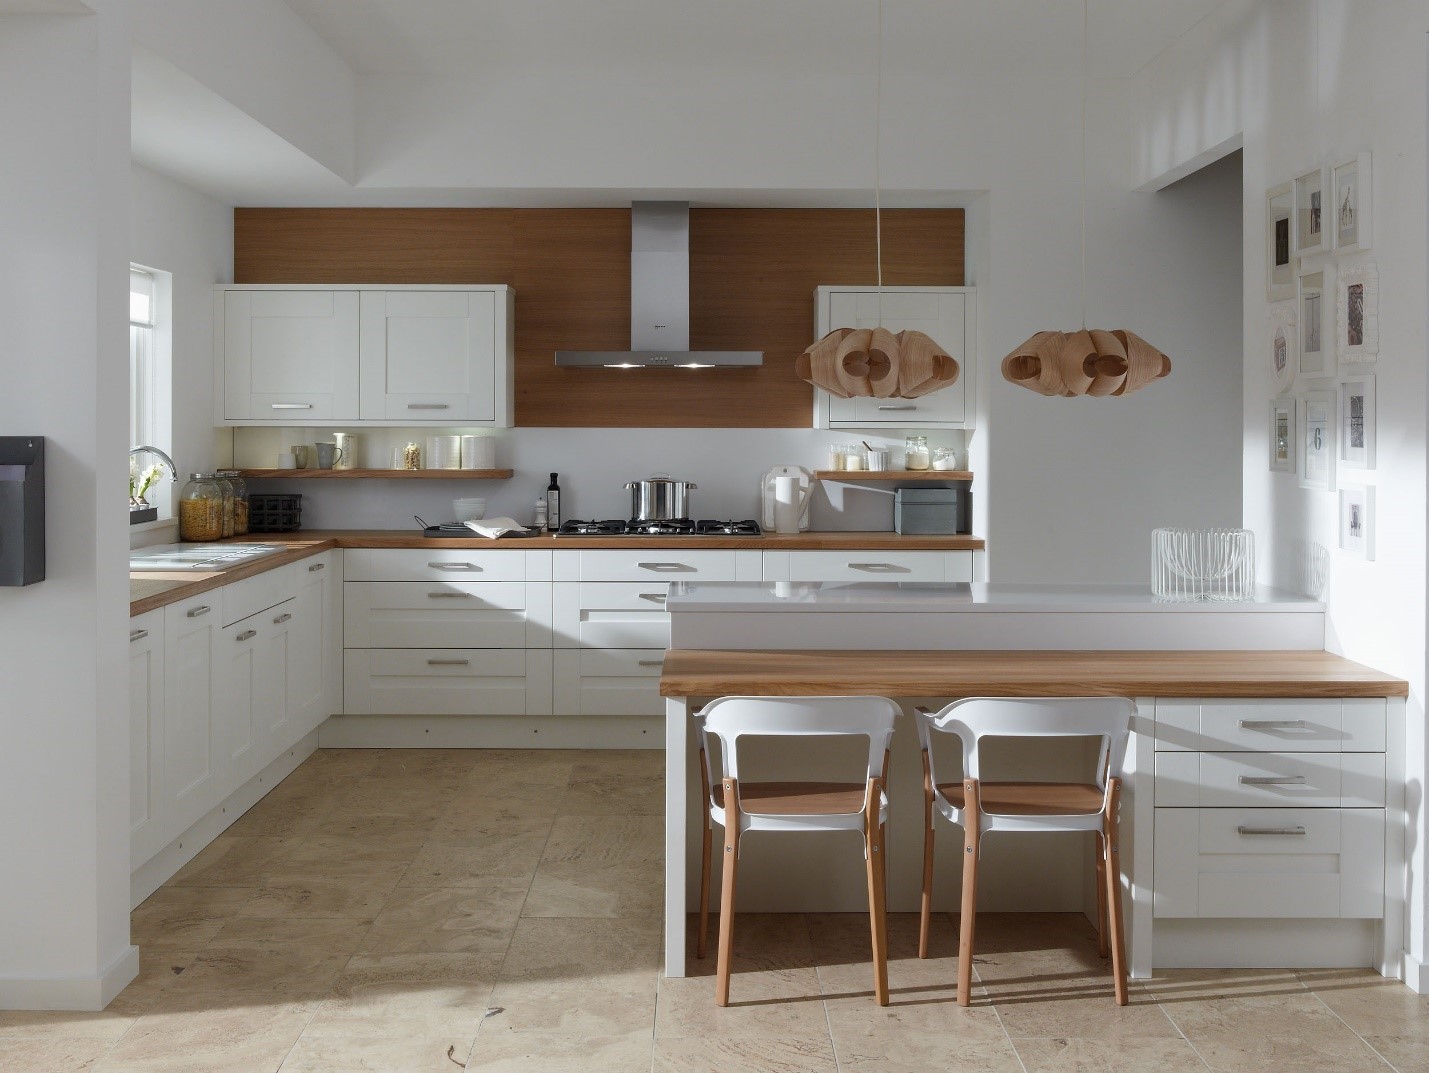 در بحث حداقل ابعاد آشپزخانه کثیف اولویت های مهم برای انتخاب کابینت آشپزخانه کثیف کدام است؟